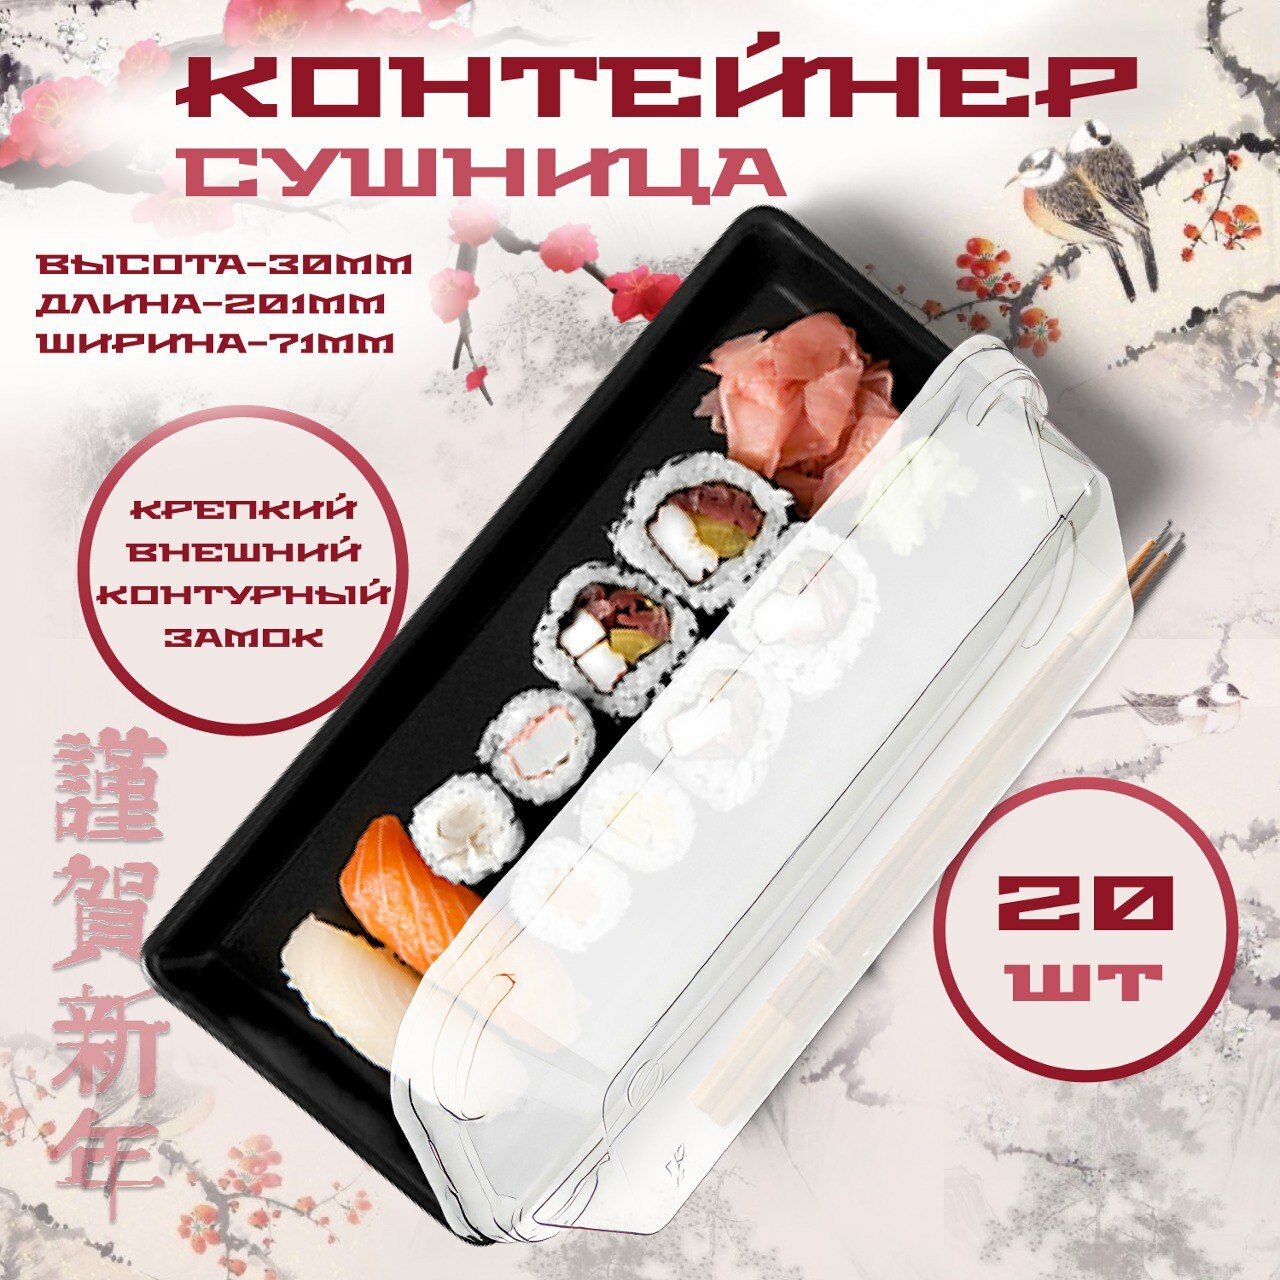 Контейнер одноразовый с крышкой для суши и роллов, восточных сладостей 201х71х44, 20 шт